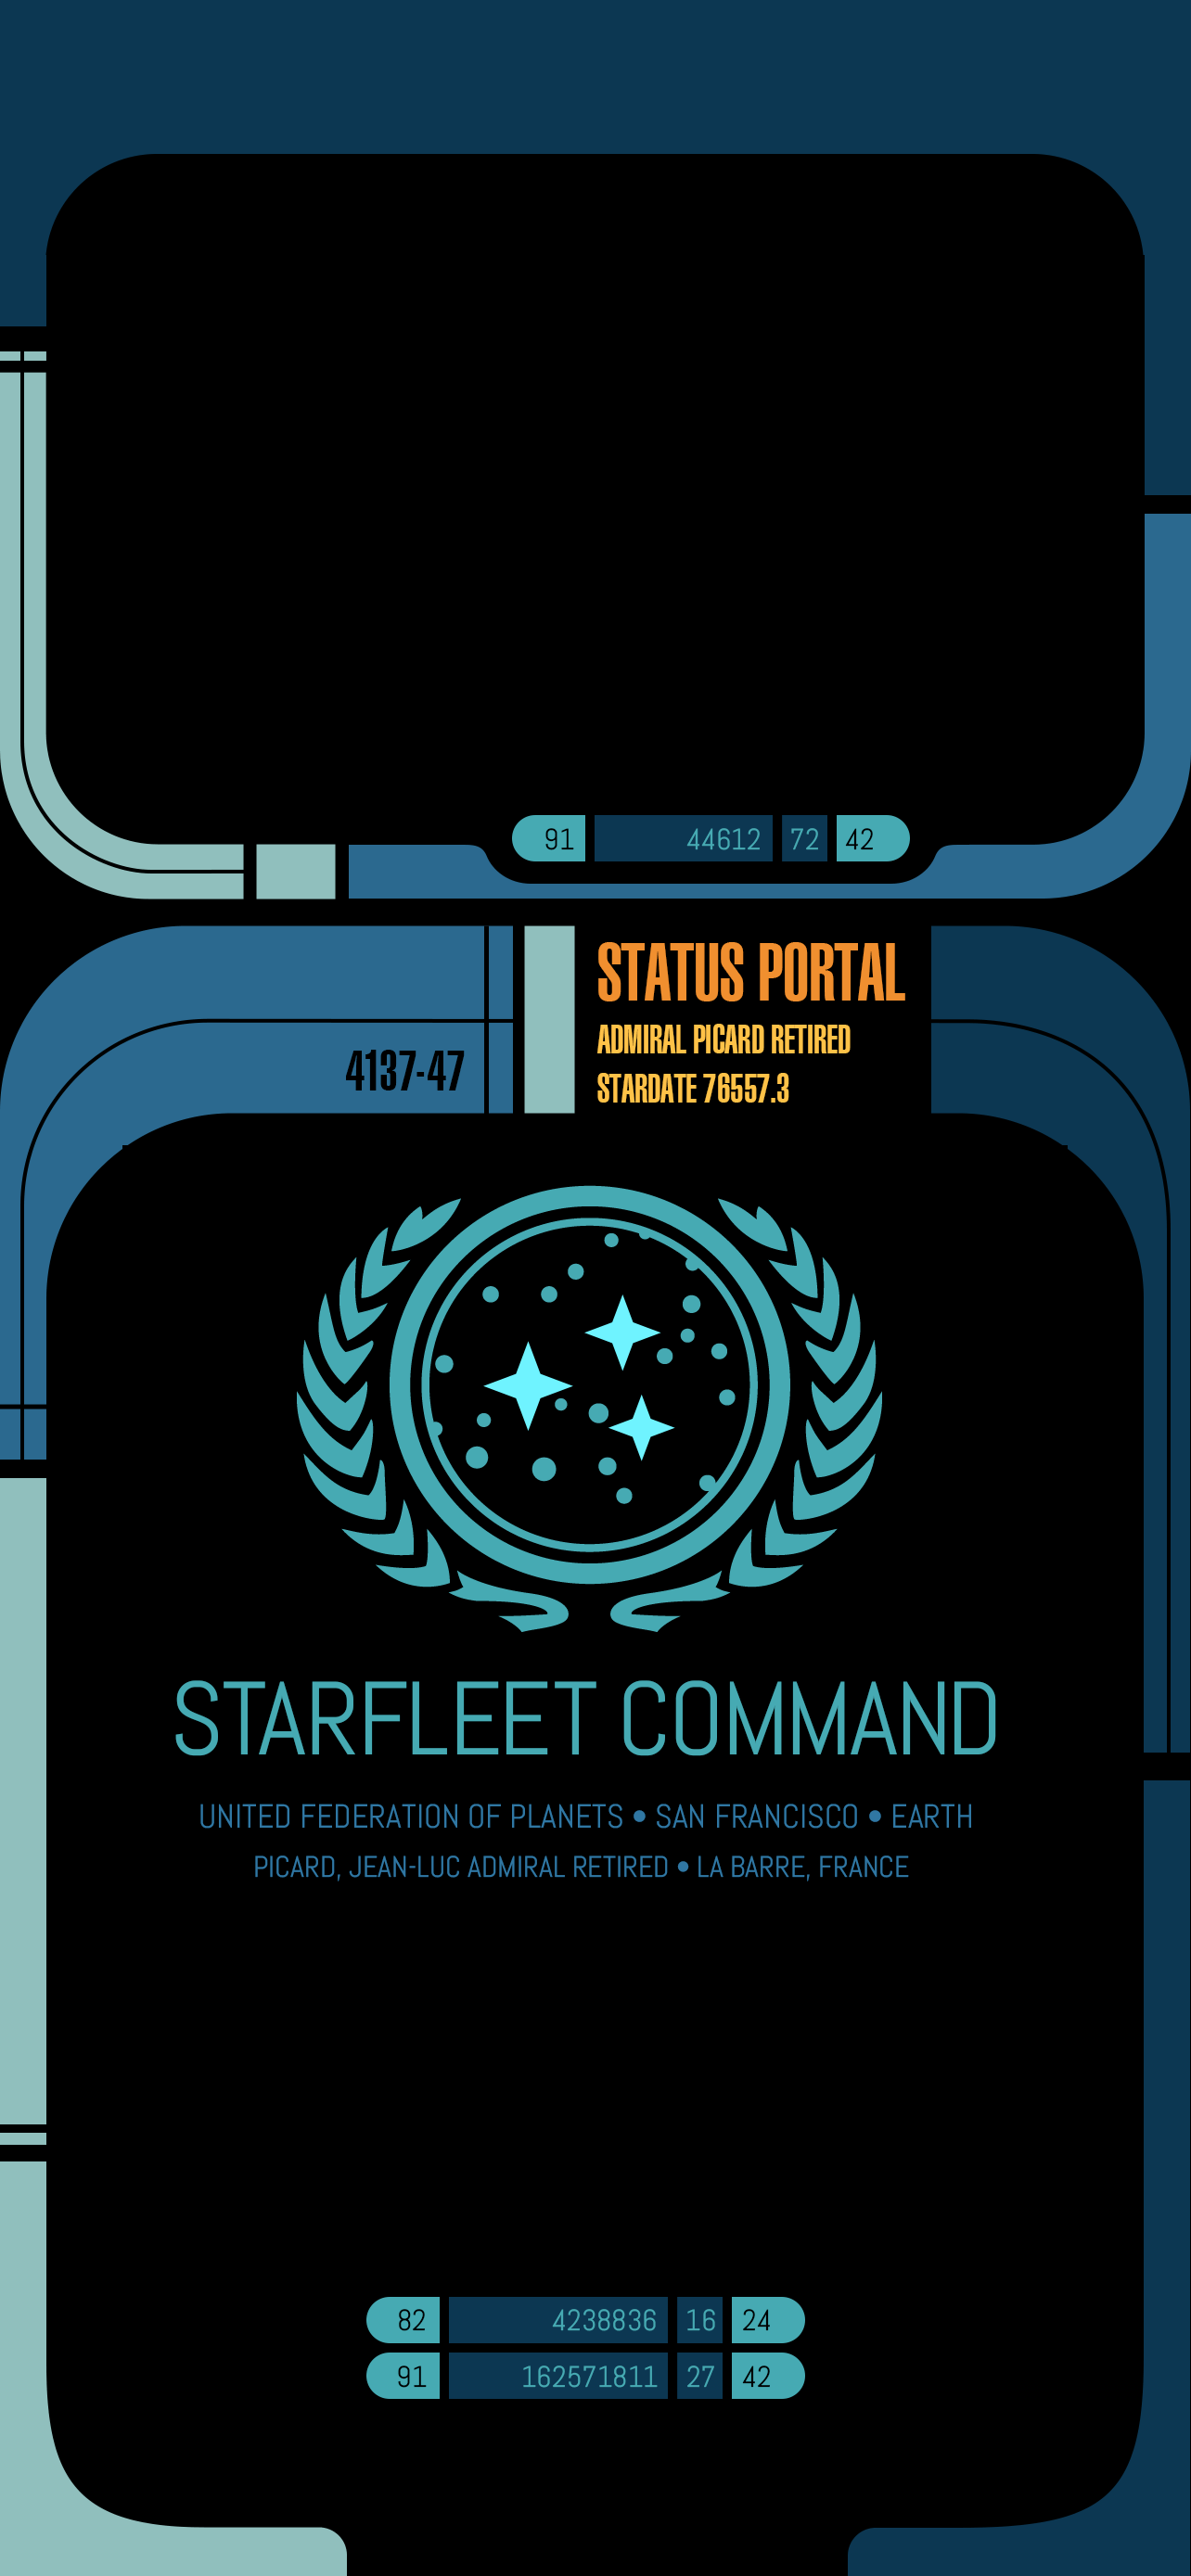 A Starfleet Command template for a status portal. - Star Trek